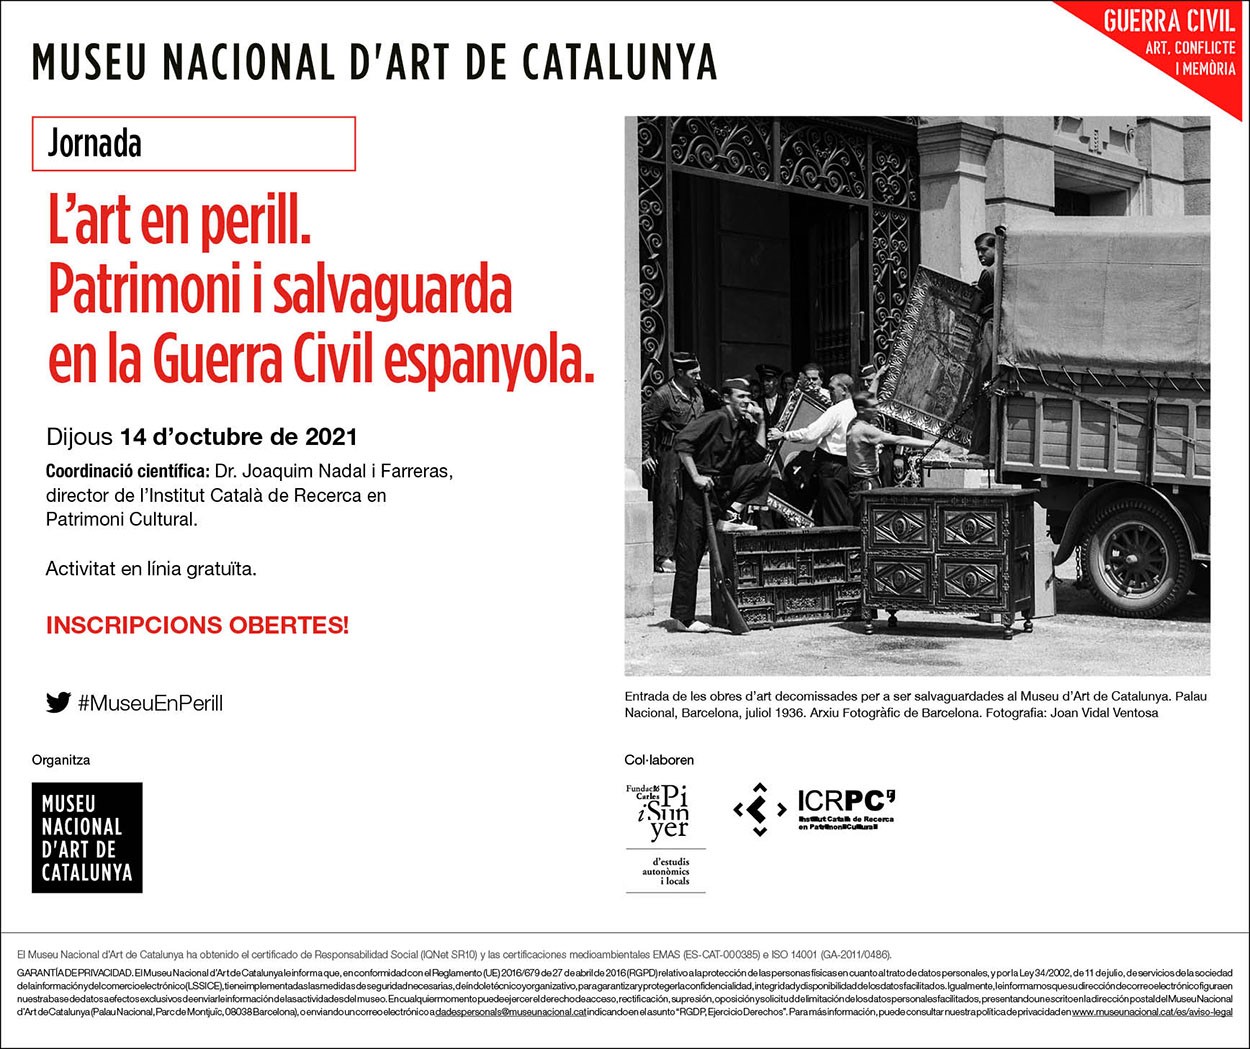 Jornada. L'art en perill. Patrimoni i Salvaguarda en la guerra civil espanyola.